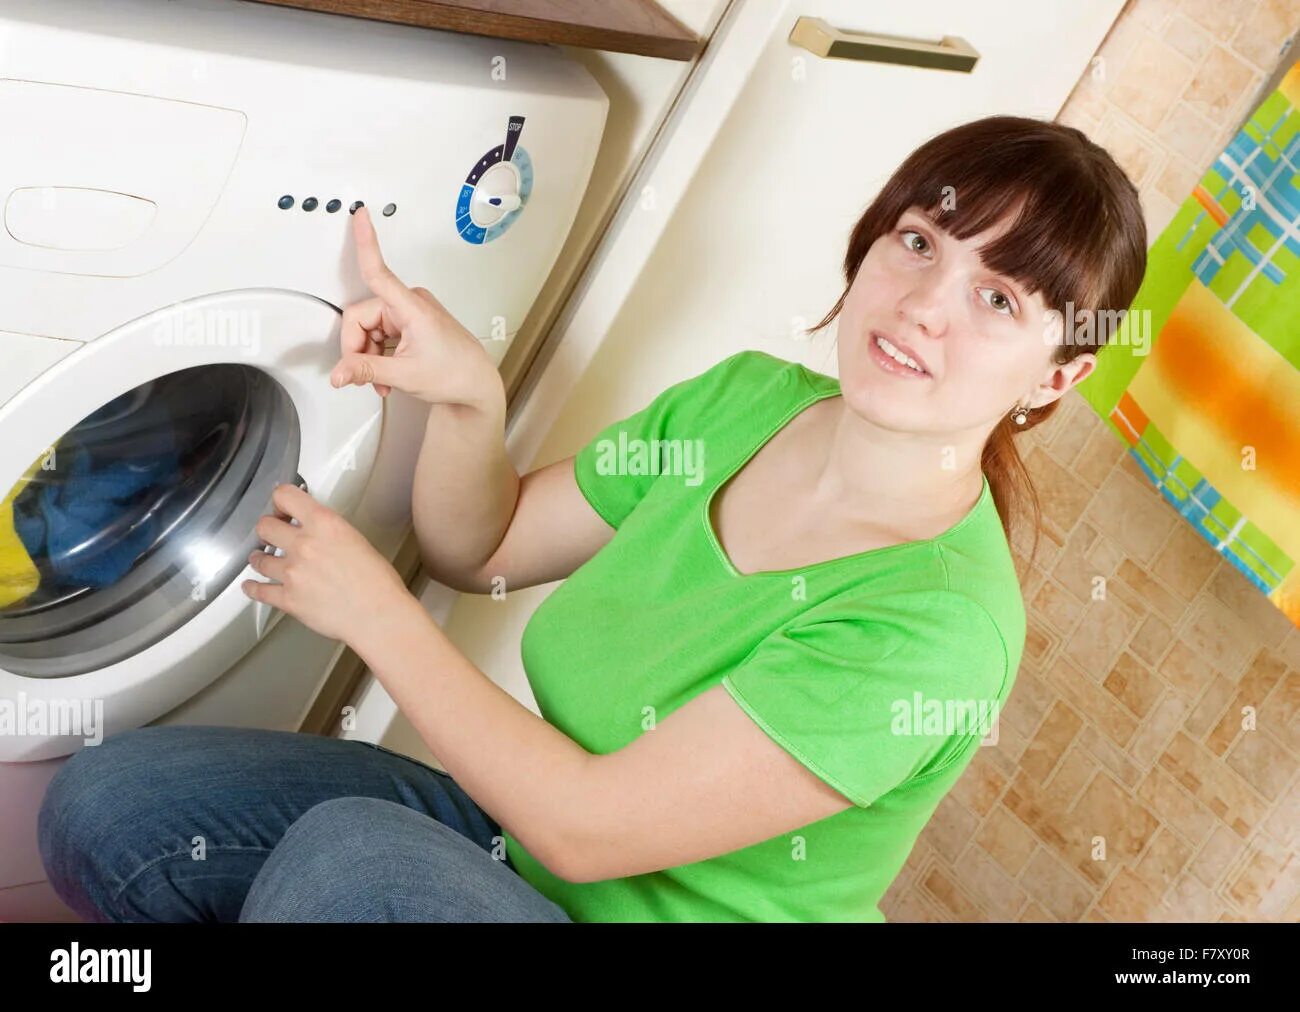 Набирается вода выключенную стиральную машину. Поломки стиральных машин. Стиральная машина не набирает. Сломалась стиральная машина. Женщина и стиральная машина.